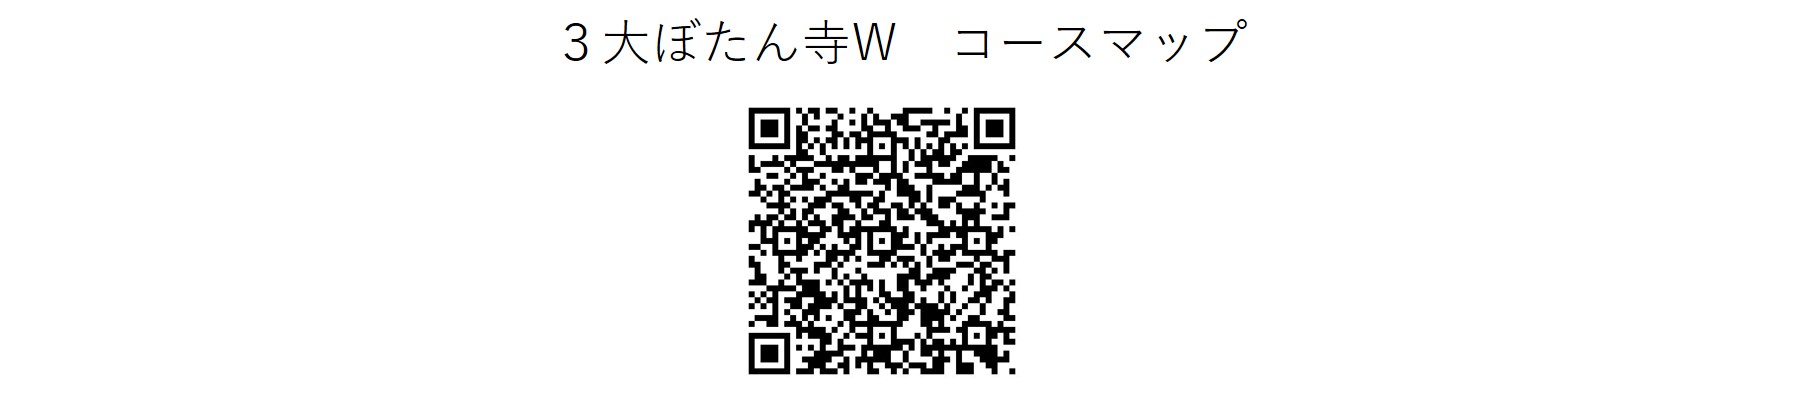 ぼたん寺Wコースマップ.jpg